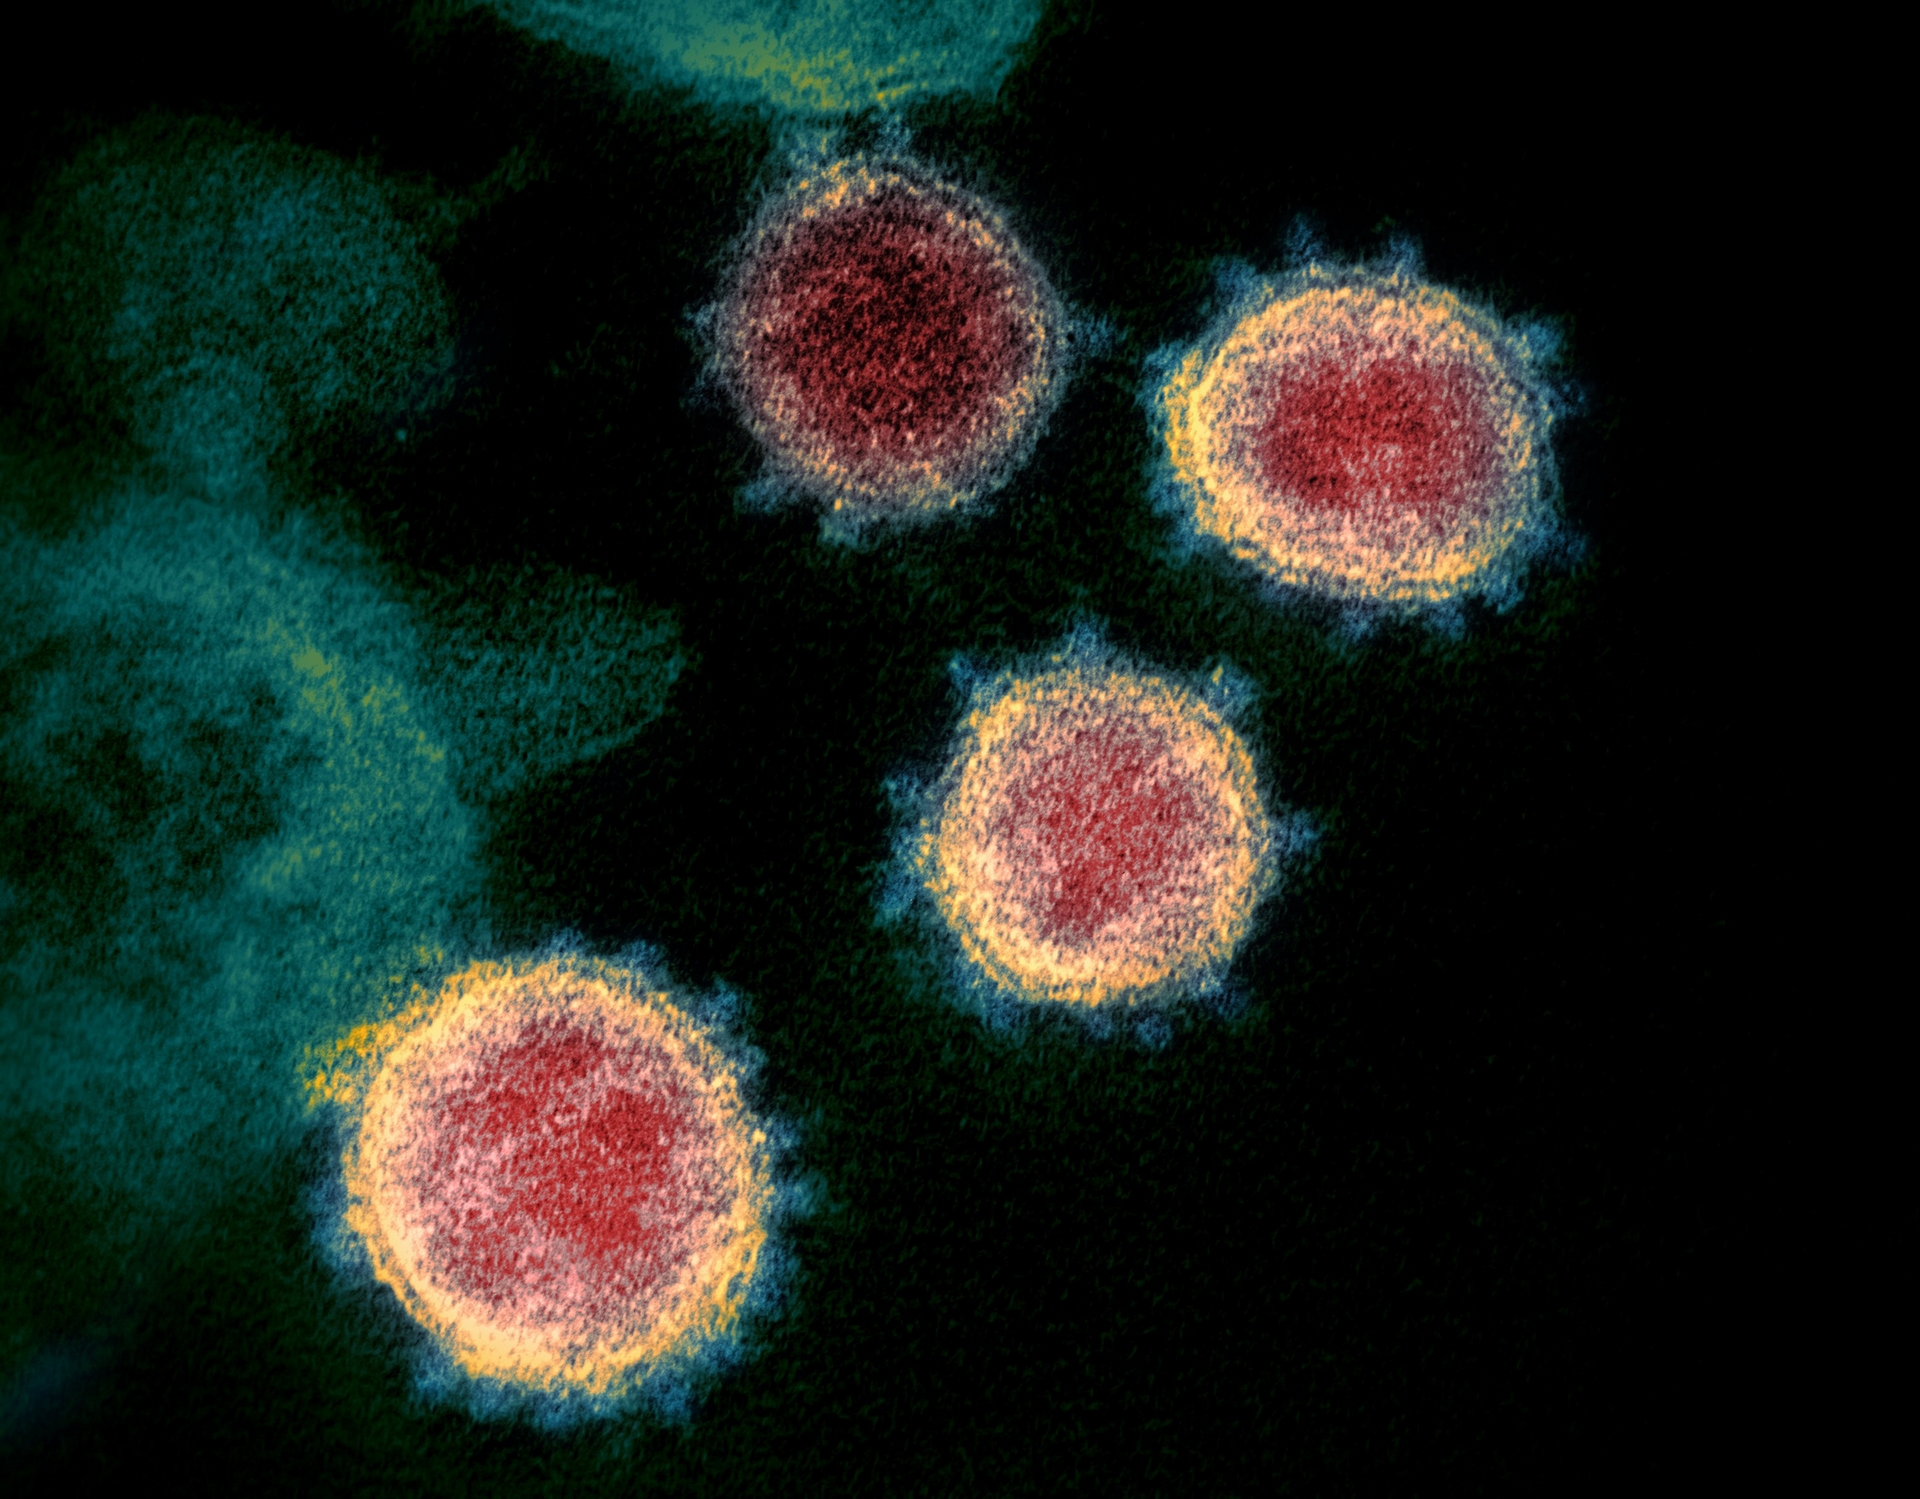 新冠病毒在穿透式電子顯微鏡下現形，可見病毒表現突起的棘冠。因新冠病毒是 RNA 病毒，突變速度快。中研院團隊將目前新冠病毒變異分為六大類型，目前全球流傳的幾乎都是第六類型病毒，未來團隊將持續追蹤病毒變異。 圖│維基百科 